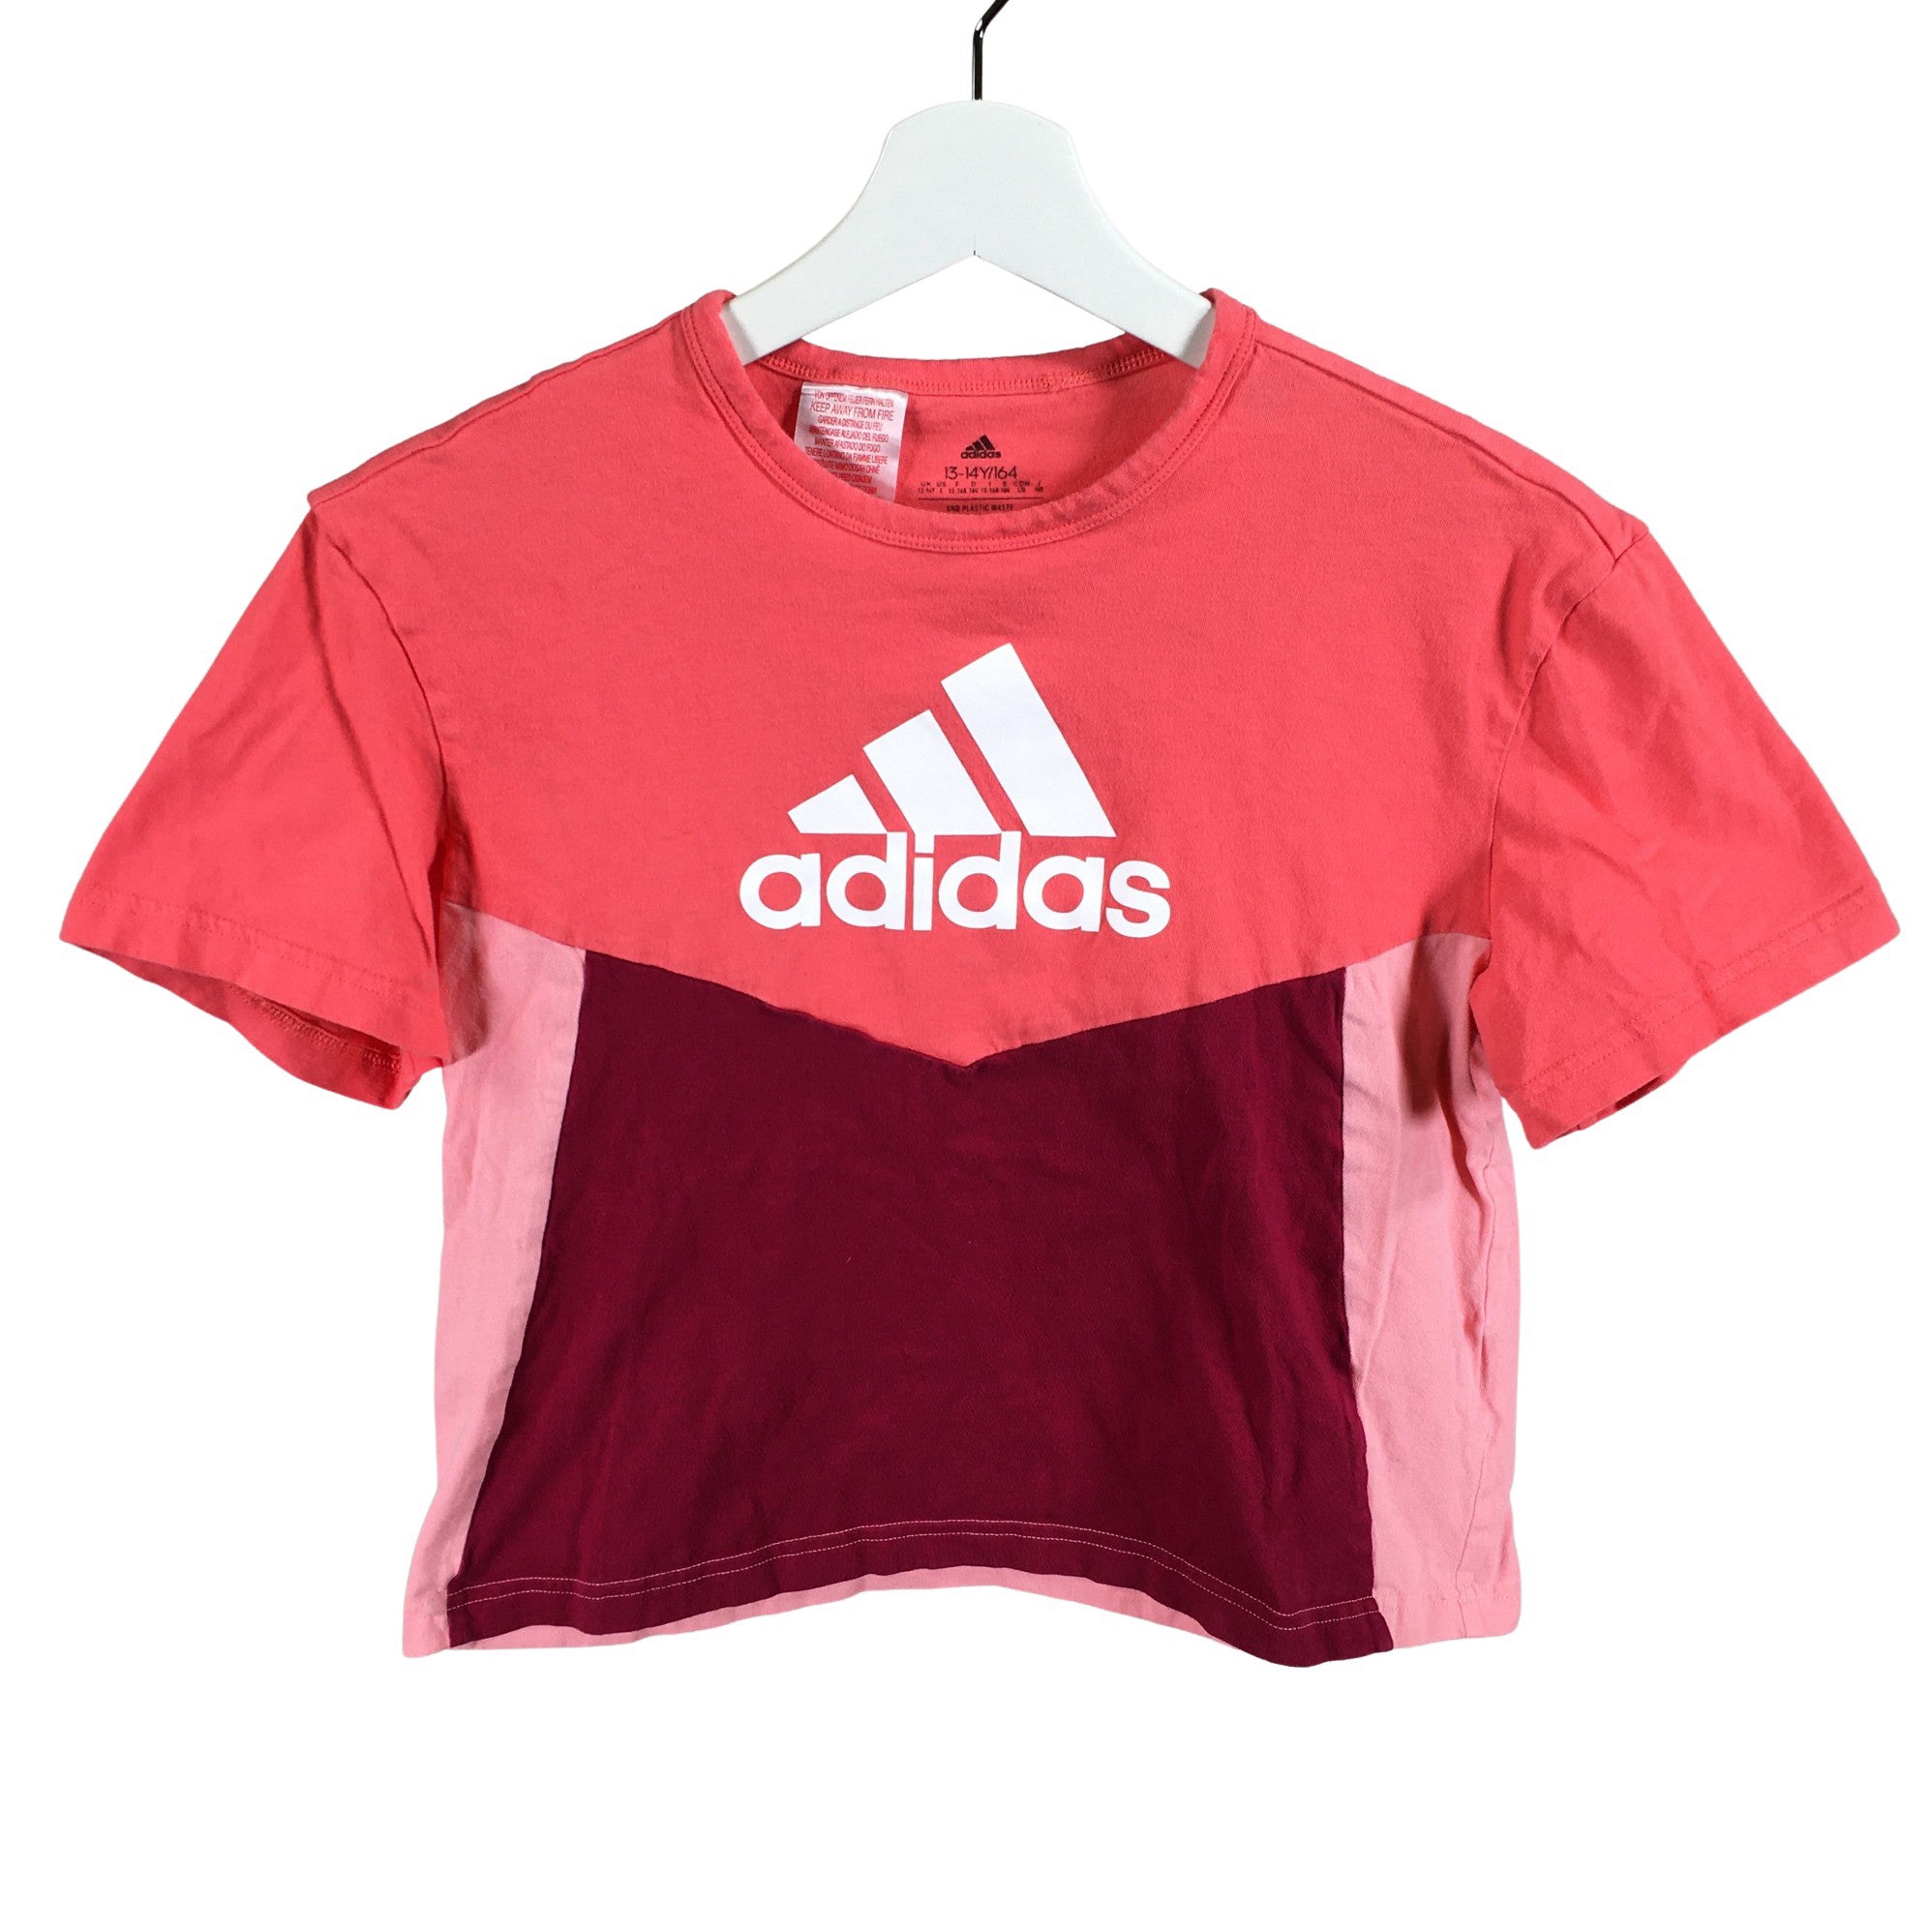 negeren open haard Meer dan wat dan ook Girls' Adidas T-shirt, size 158 - 164 (Red) | Emmy